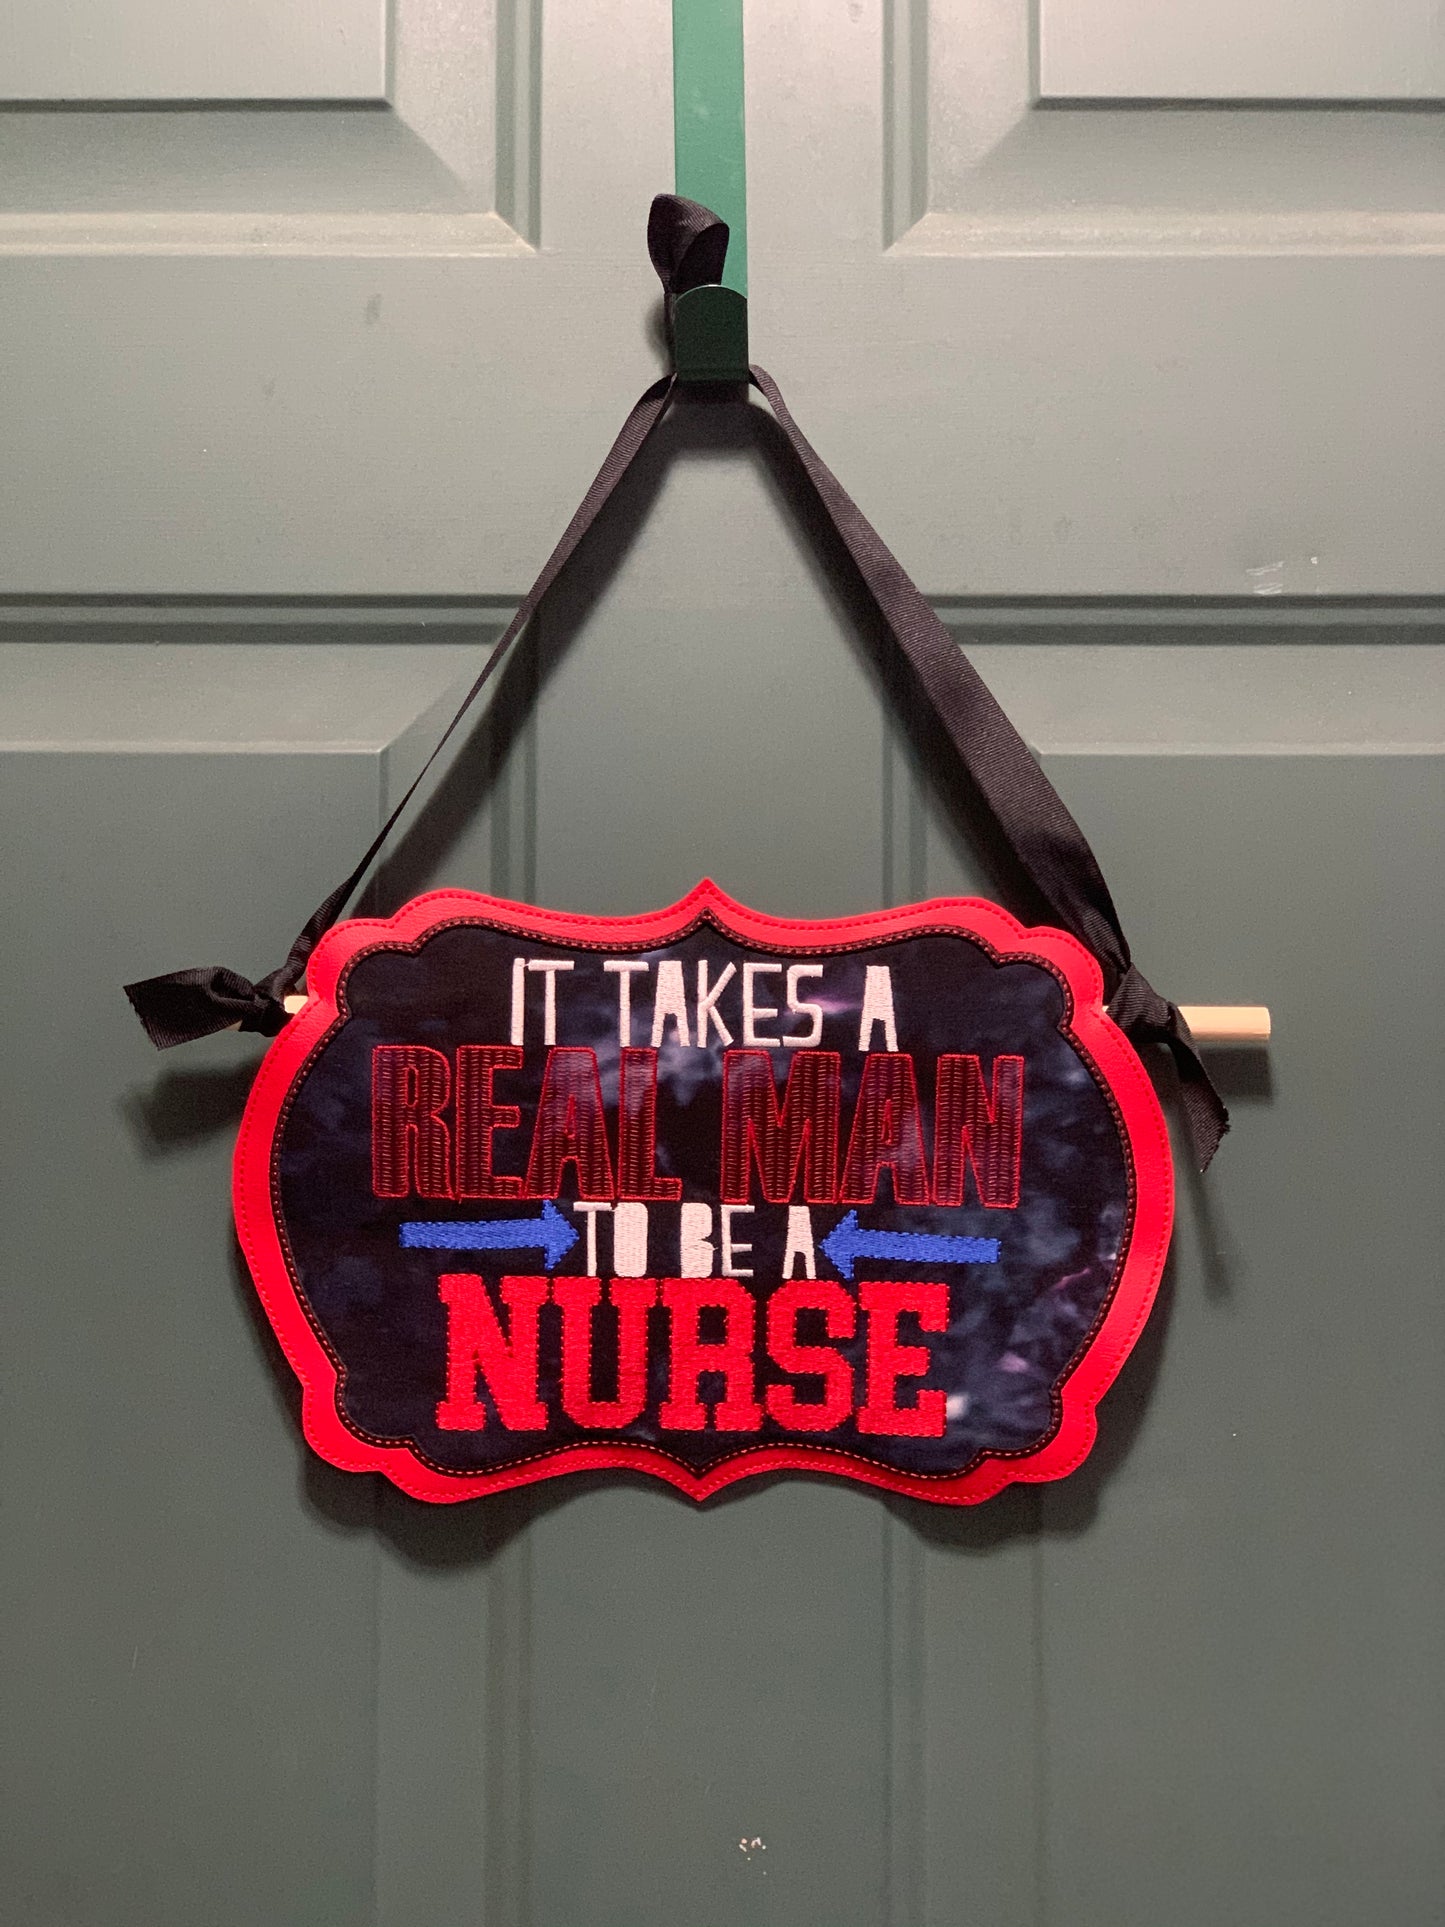 Nurse Themed Door Hanger